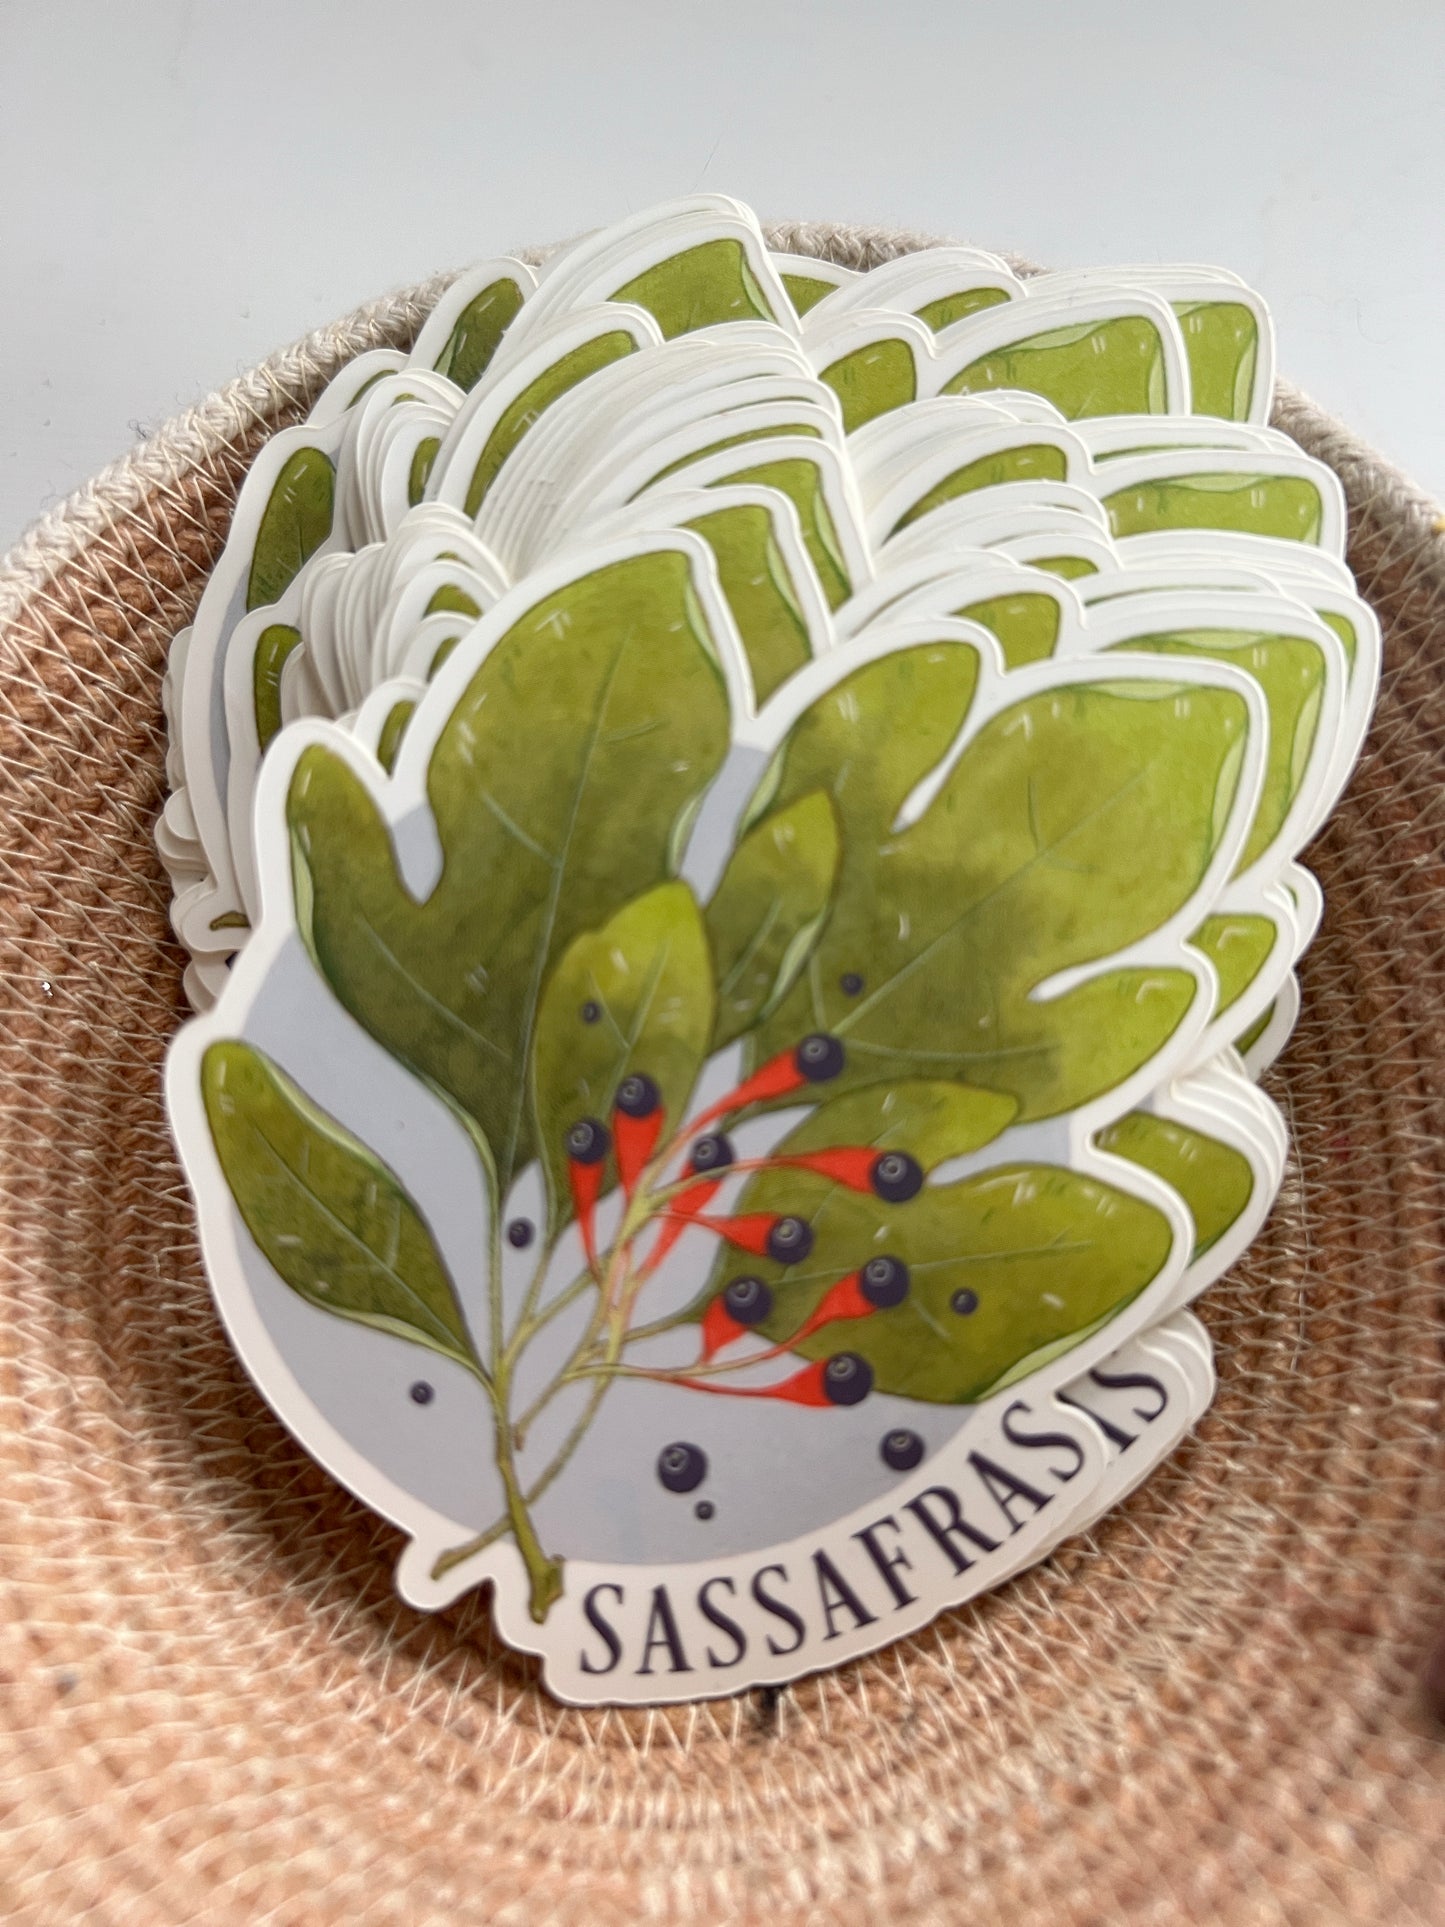 Sassafras Stickers